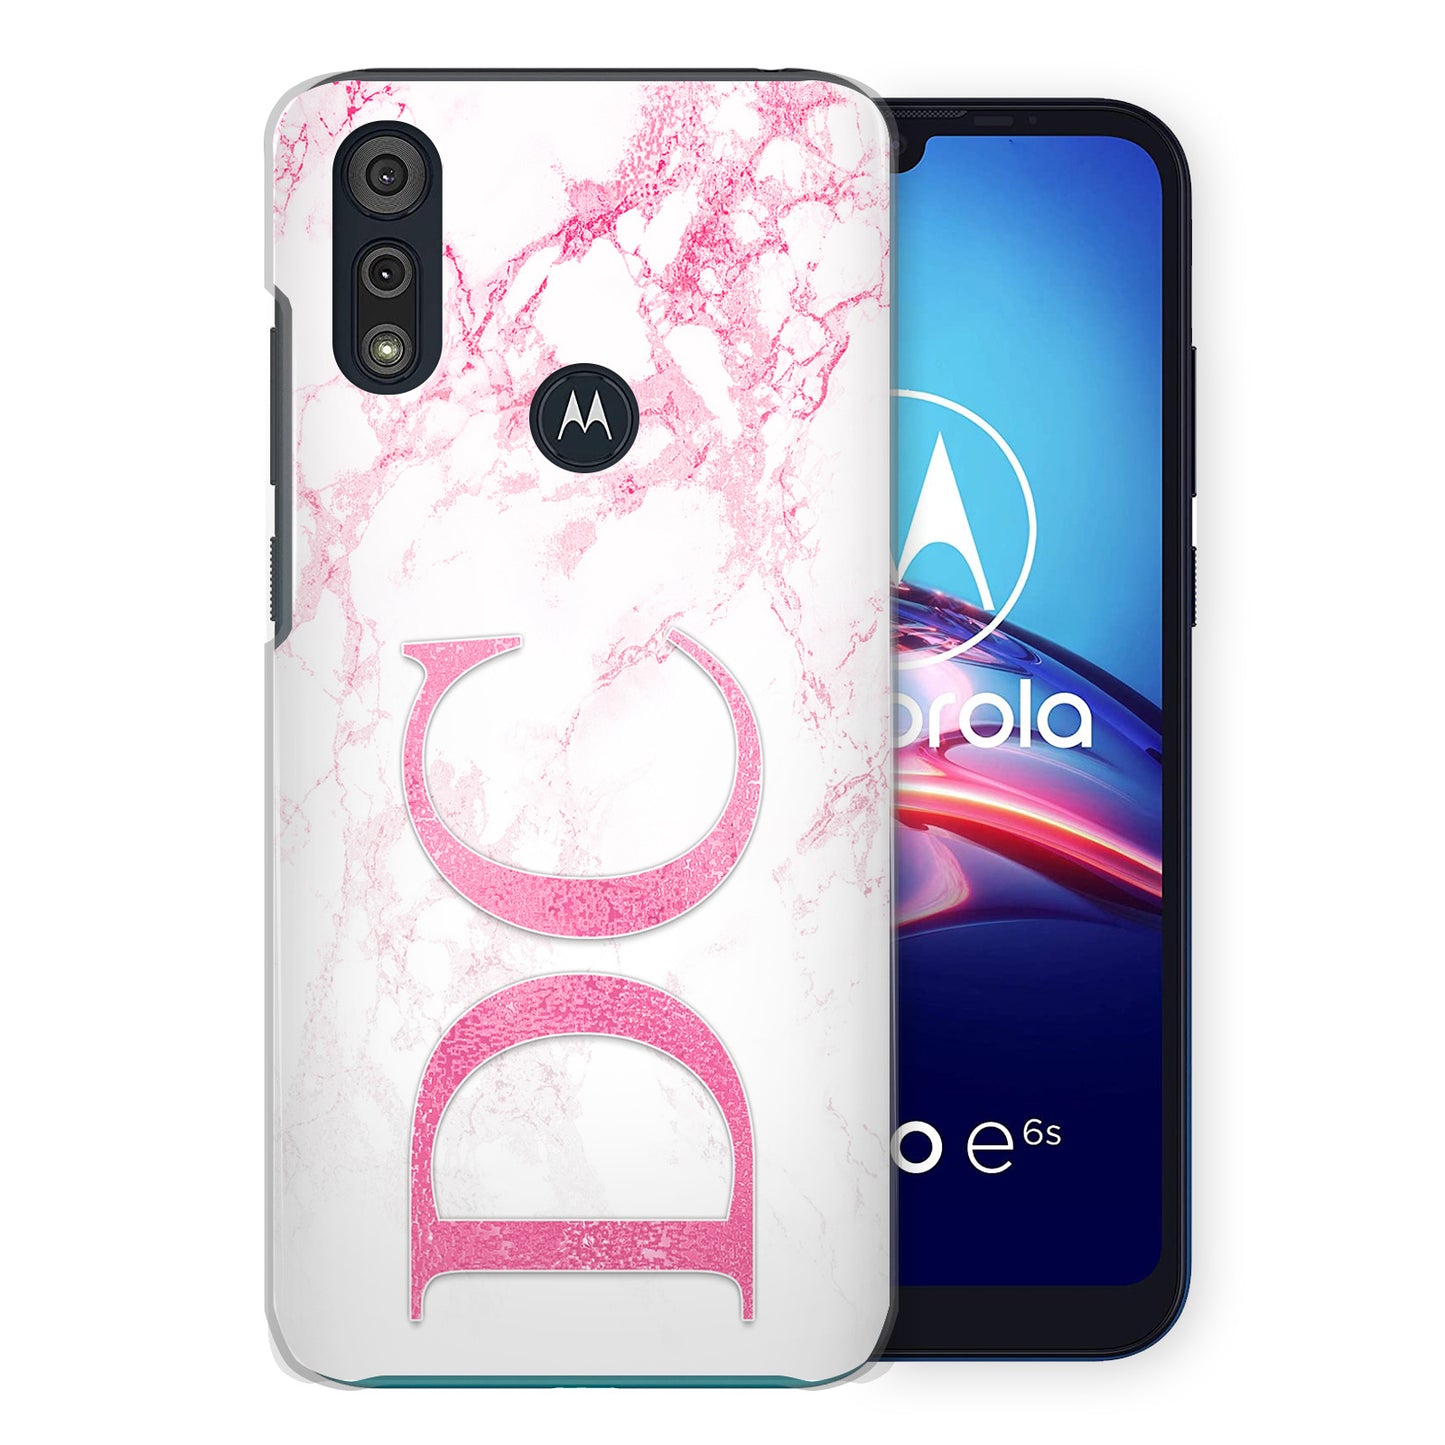 Personalised Motorola Hard Case - Pink Marble & Pink Monogram